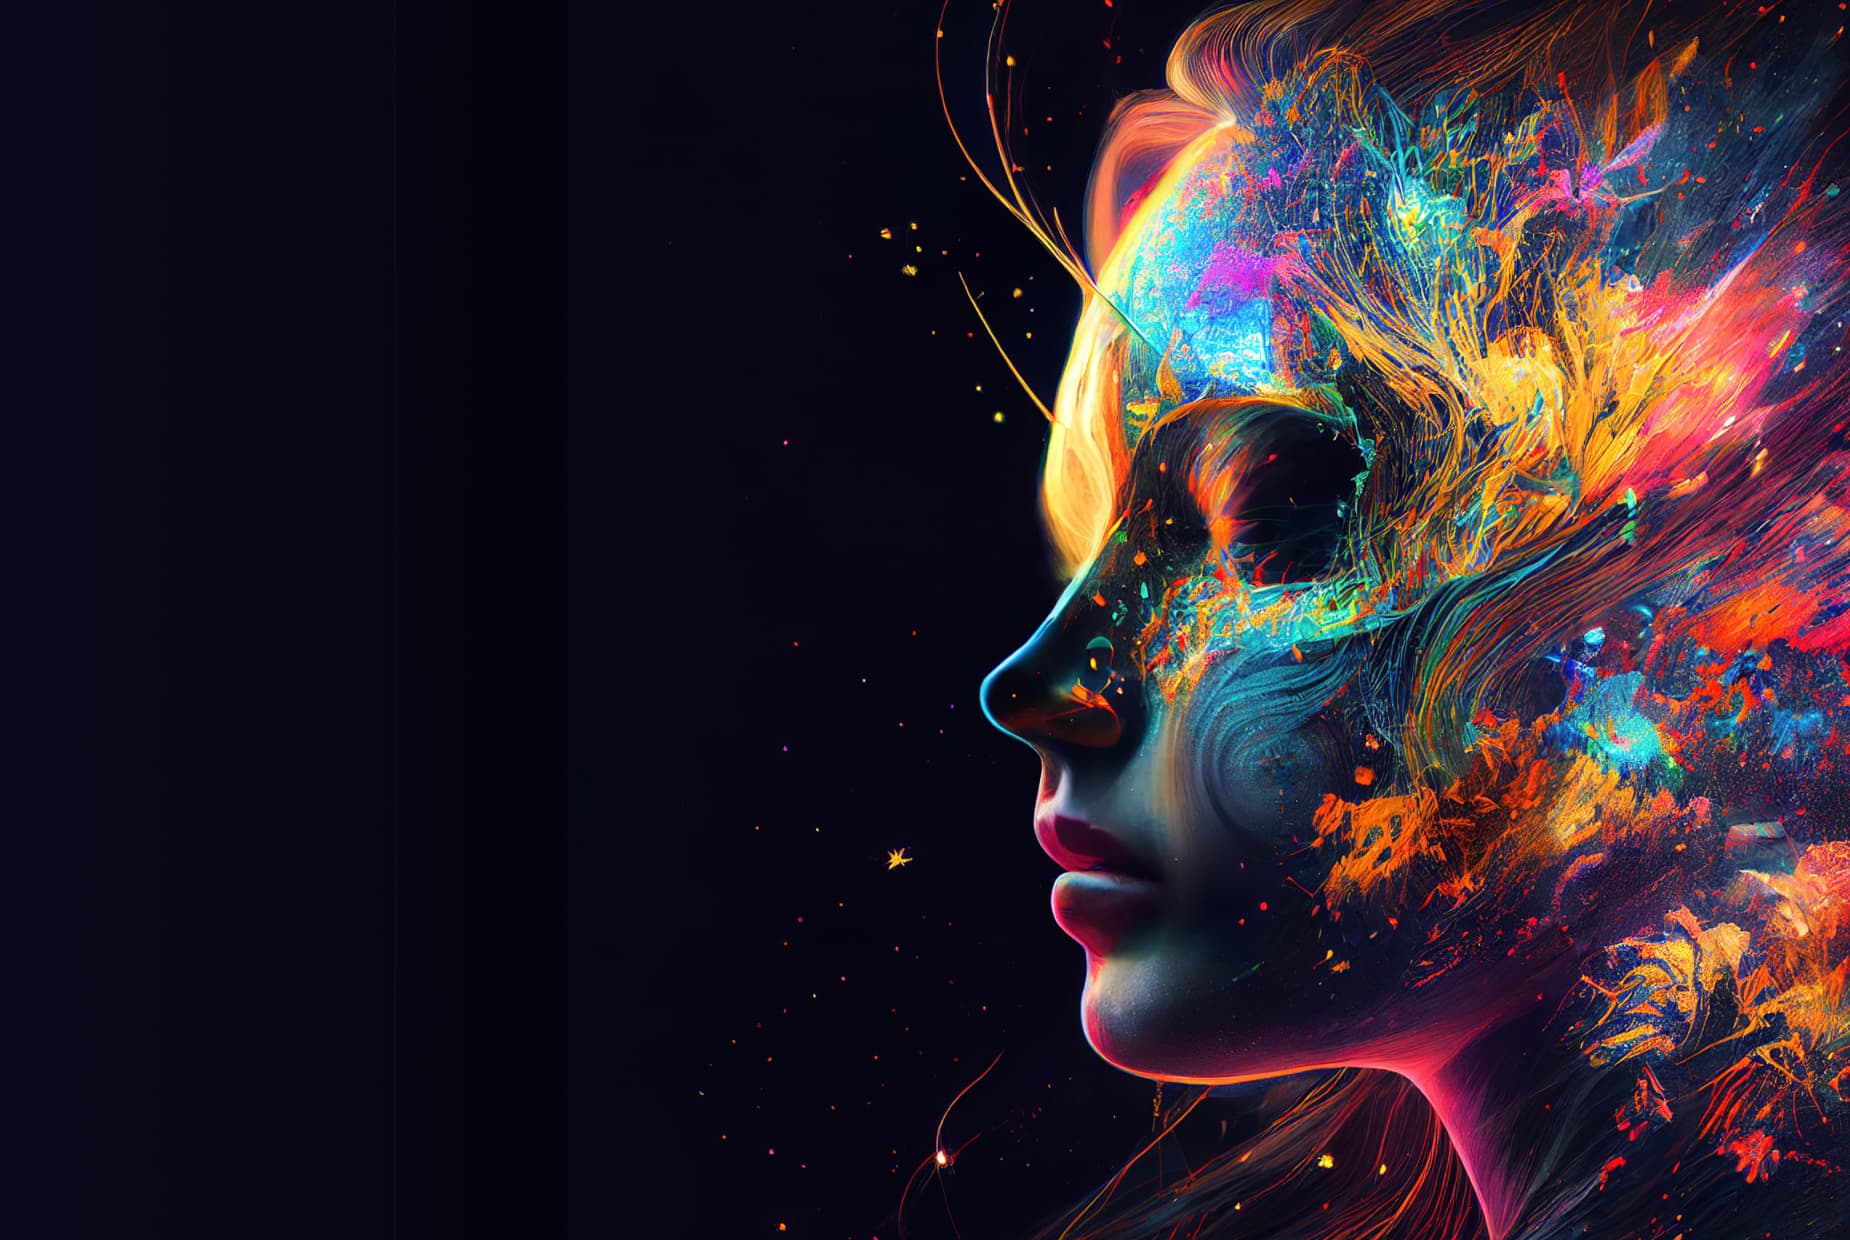 Imagem gerada por IA da cabeça de uma mulher contendo arte abstrata colorida.